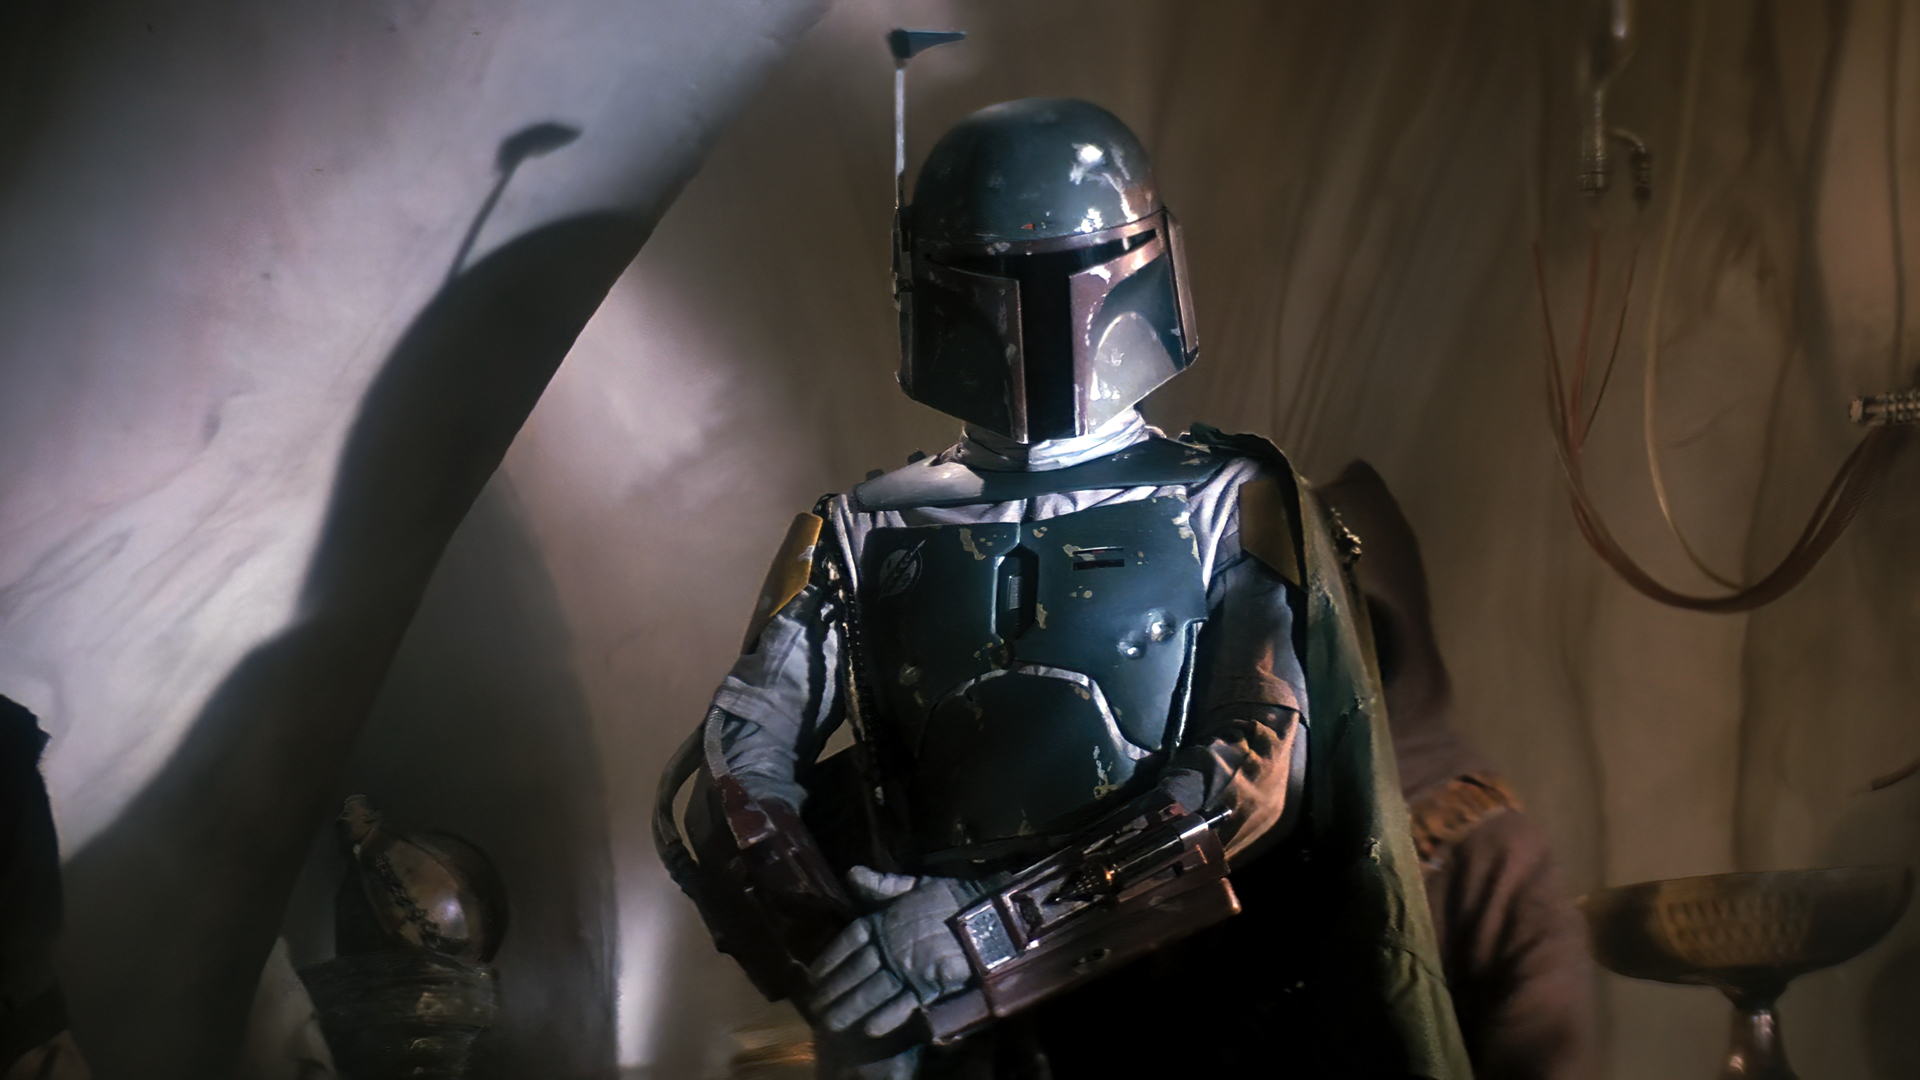 People 1920x1080 Star Wars: Episode VI - The Return of the Jedi movies film stills Boba Fett Mandalorians helmet Tatooine Jabba's Palace Star Wars armor Jawas